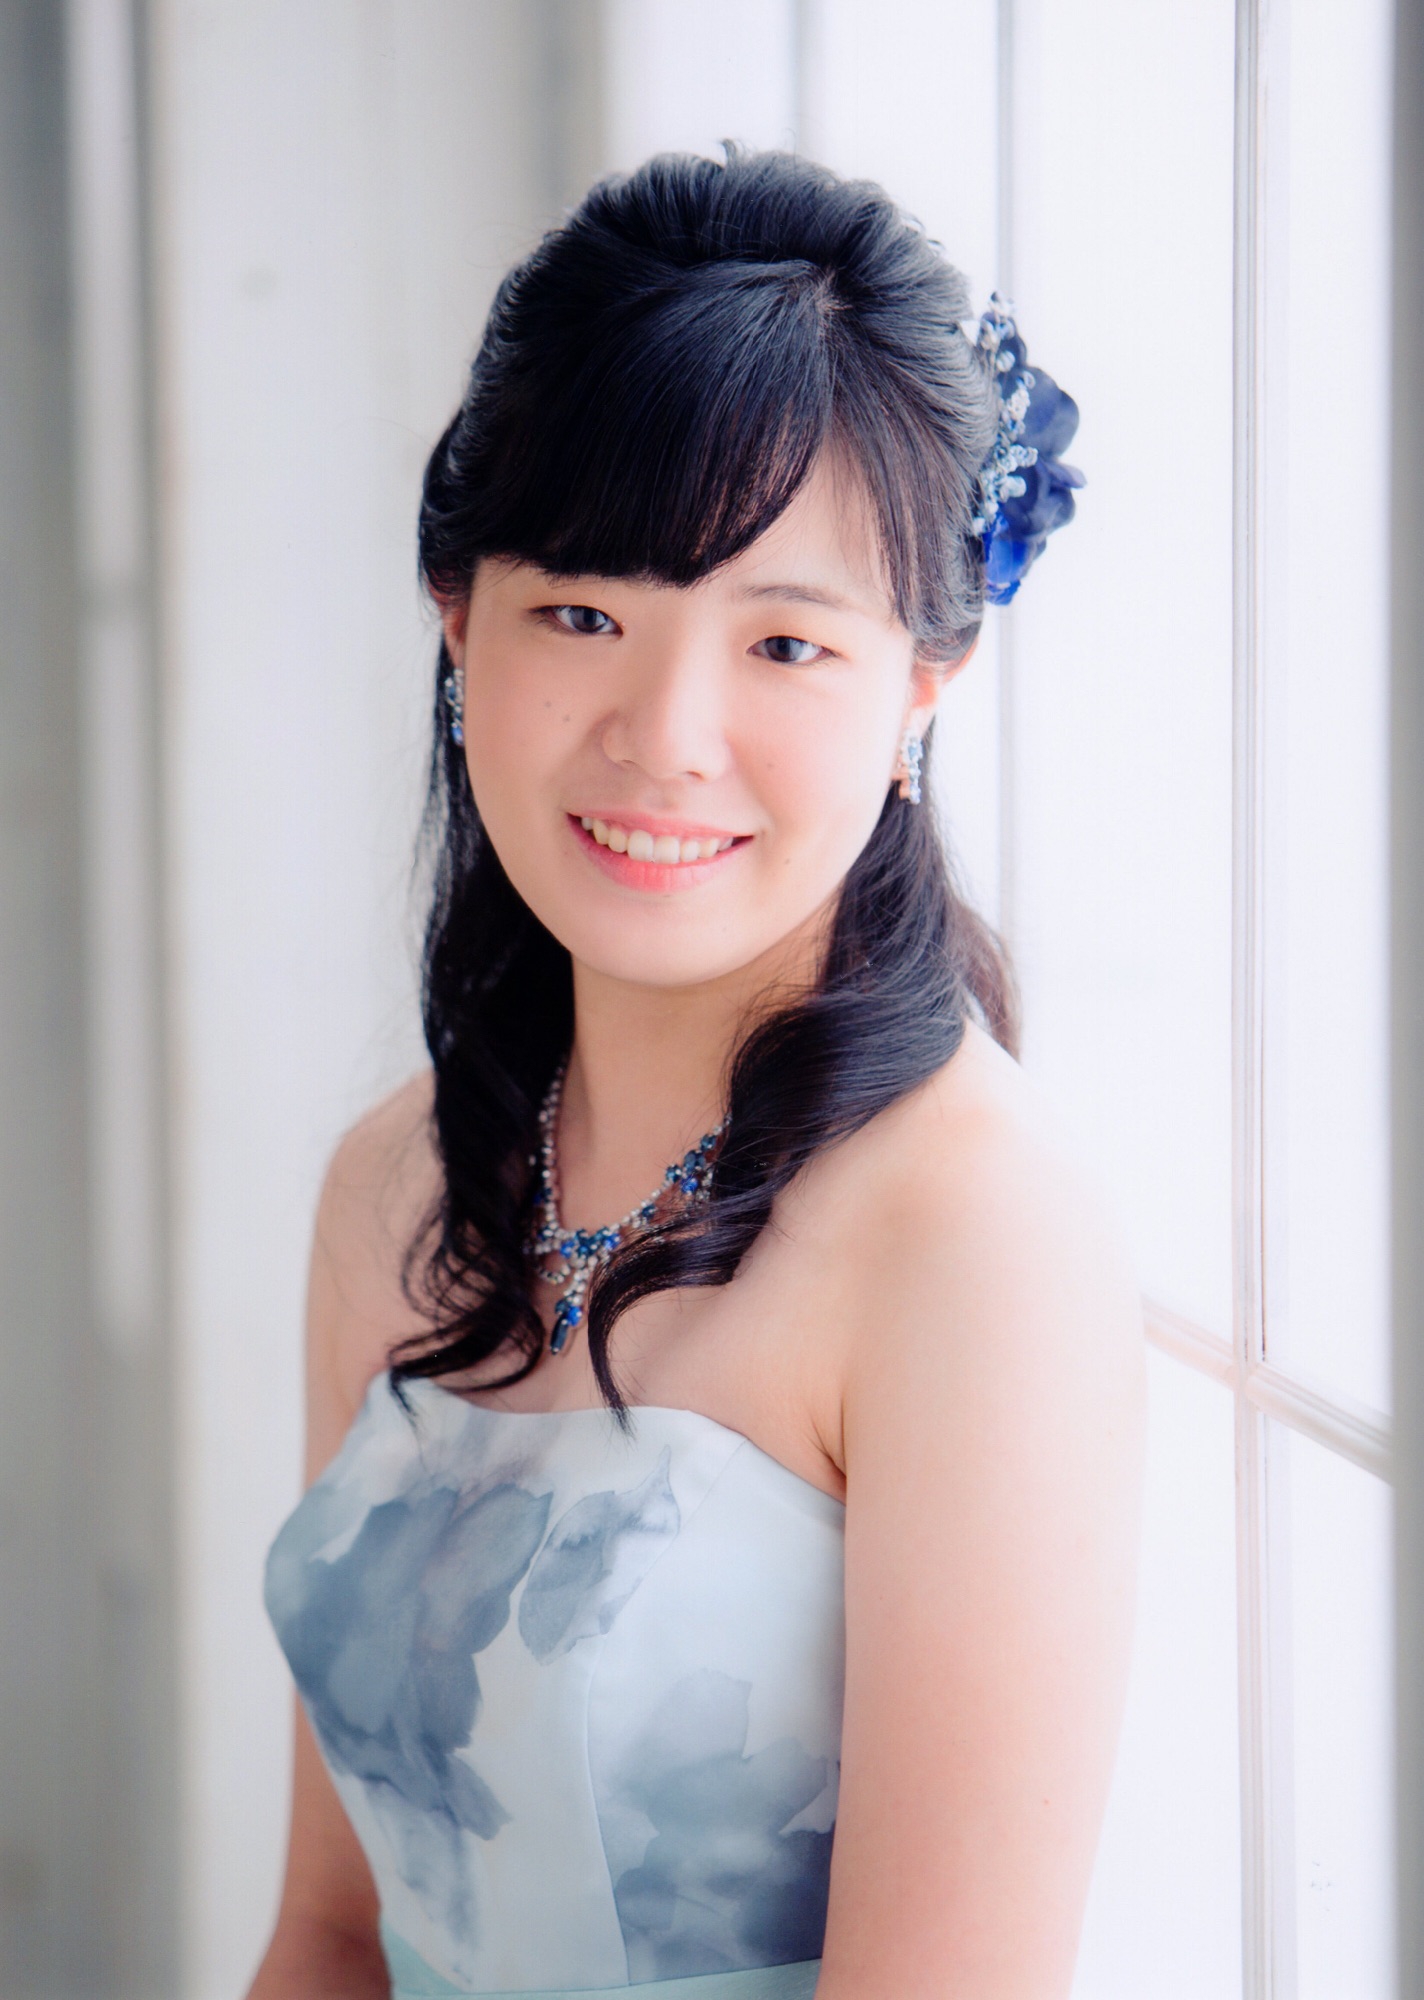 Profile ピアニスト上田友紀子 Official Site